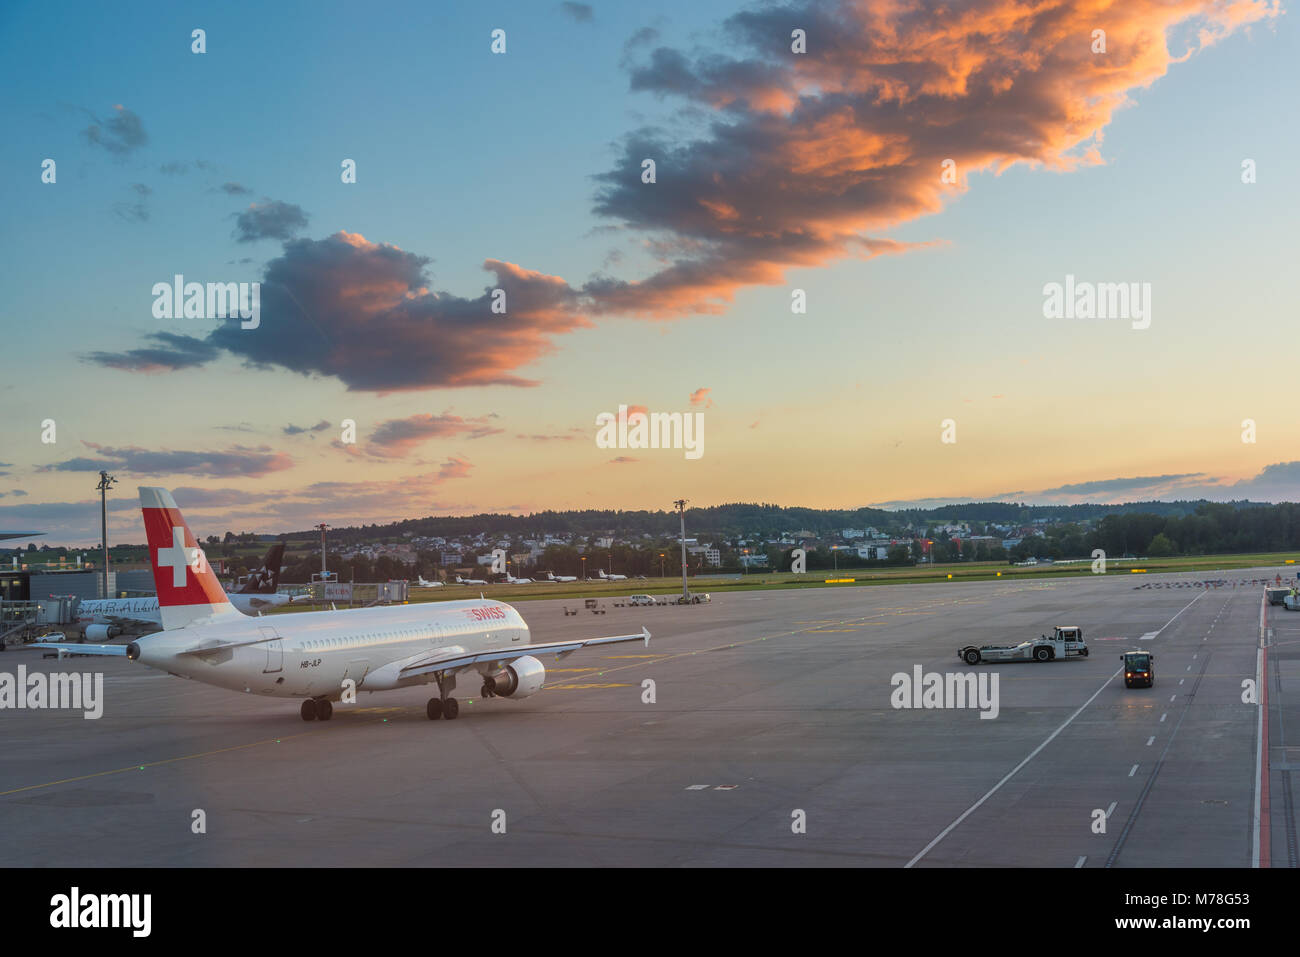 Départ de l'aéronef à l'aéroport de Zurich au coucher du soleil Banque D'Images